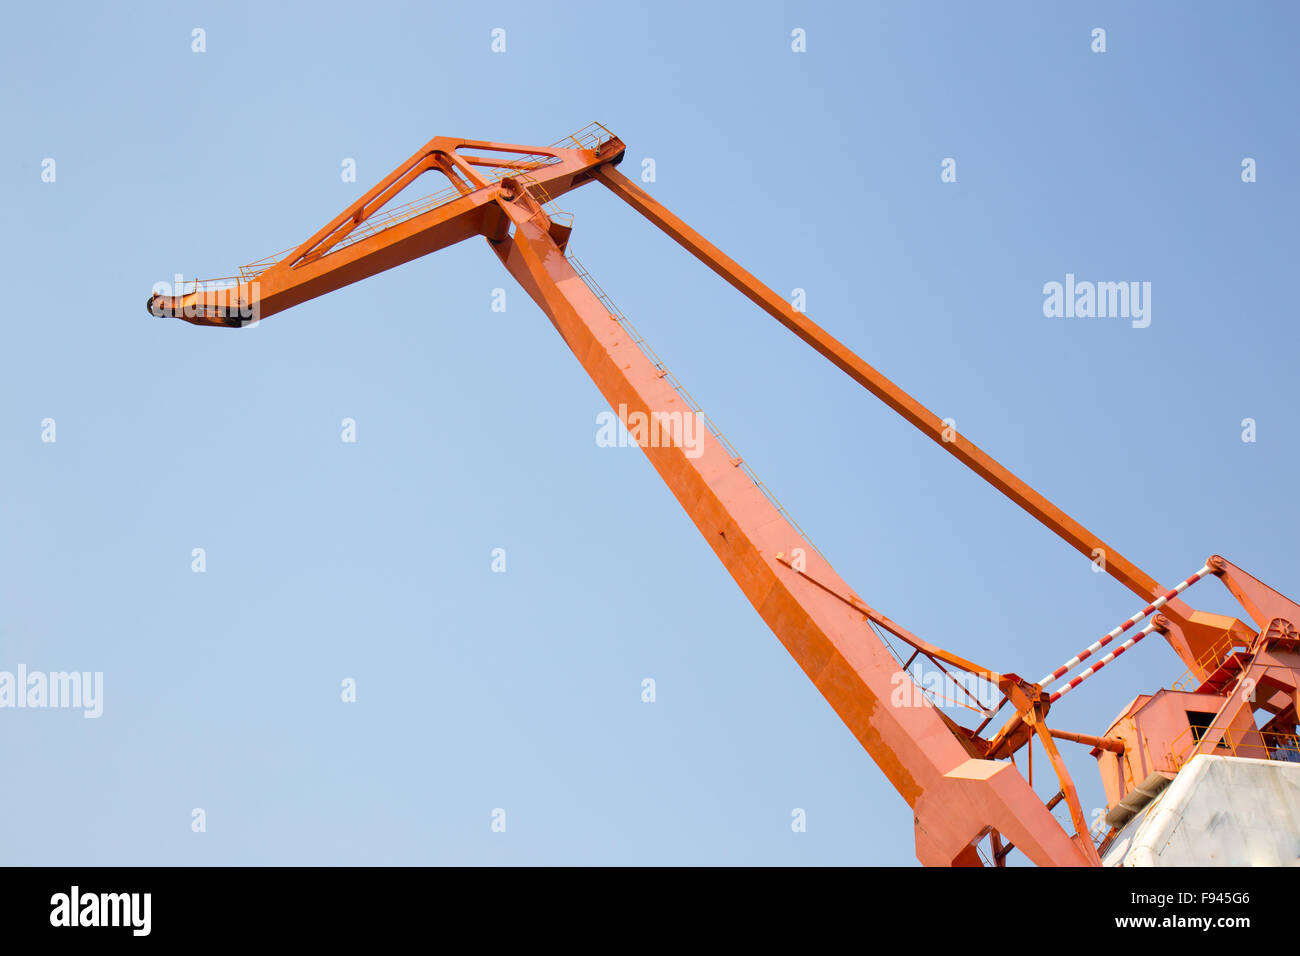 Huge orange cargo crane in front of blue sky Stock Photo